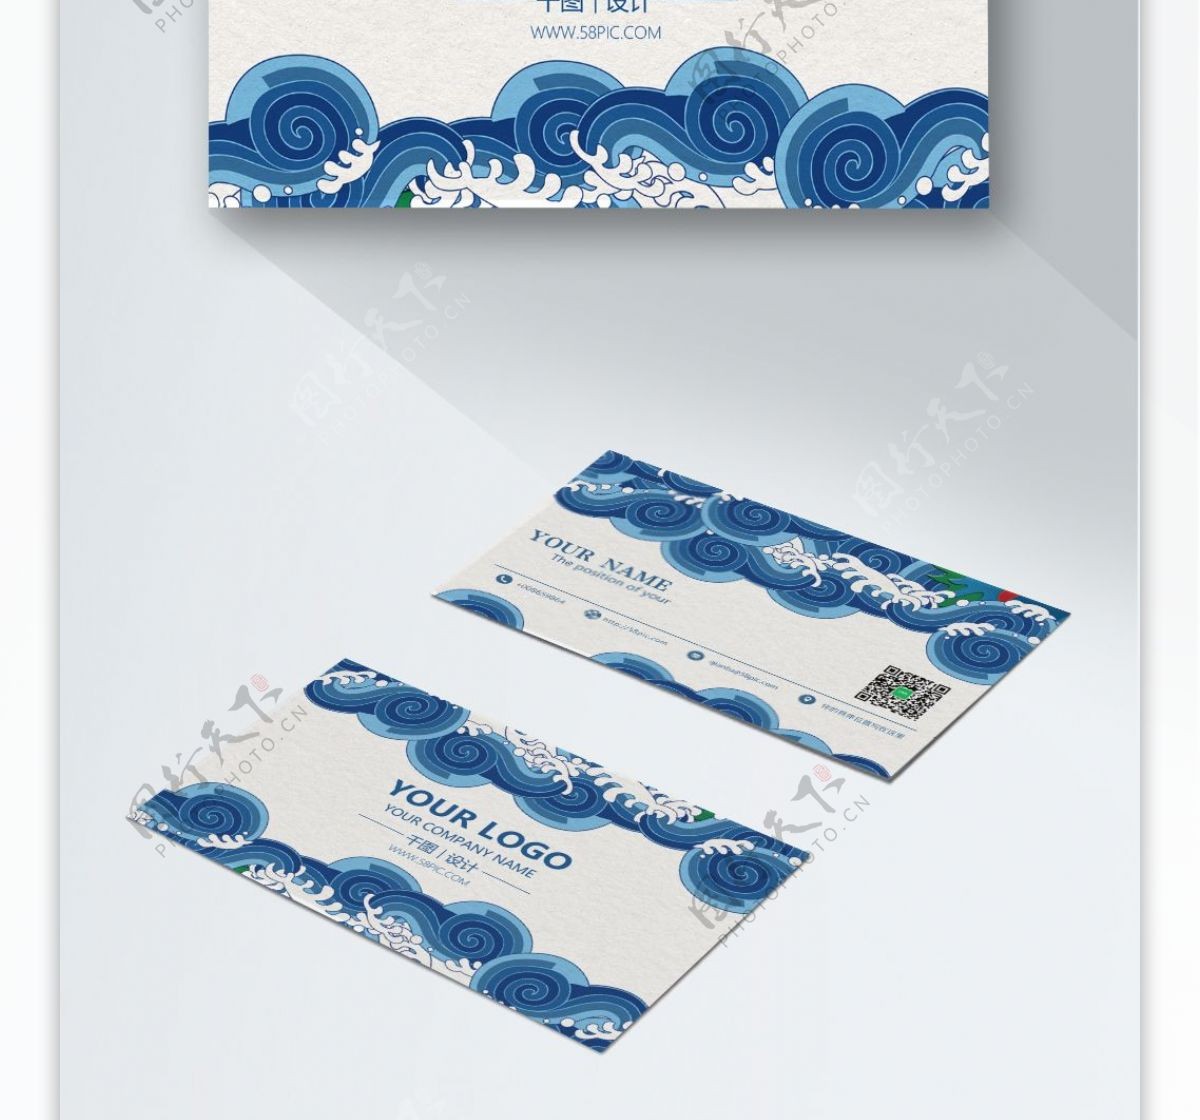 创意蓝色中国风海浪商务名片设计